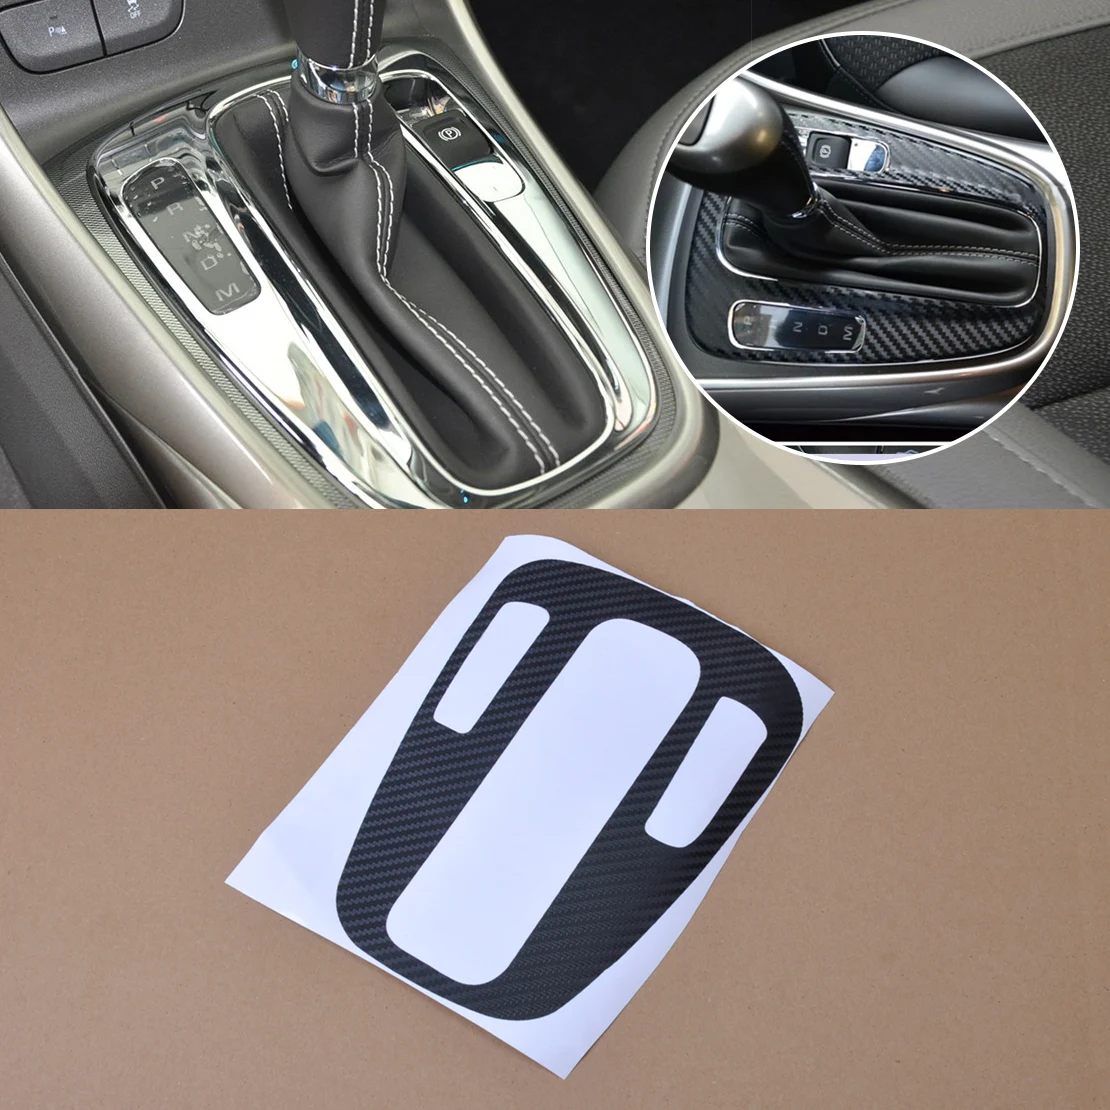 Beler 1 шт. стайлинга автомобилей углеродного волокна Панель Шестерни переключения Защитная крышка Стикеры для Chevrolet Holden Малибу 2012 2013